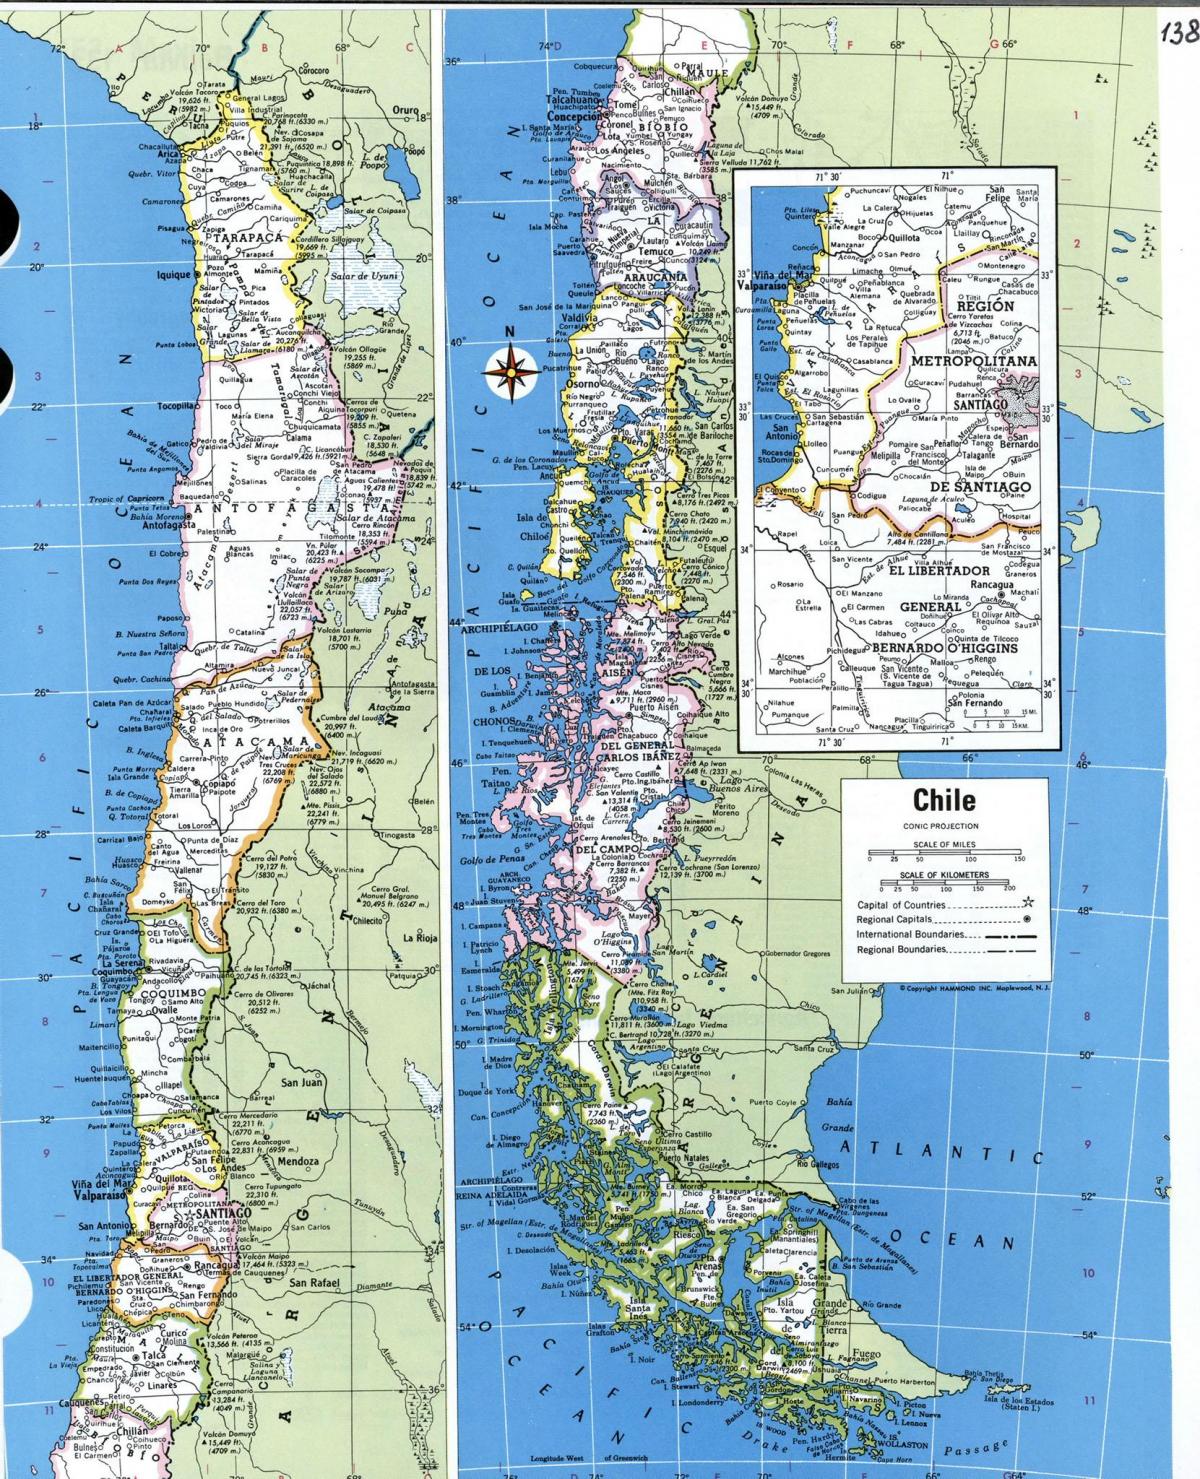 Bản đồ, chi tiết Chile